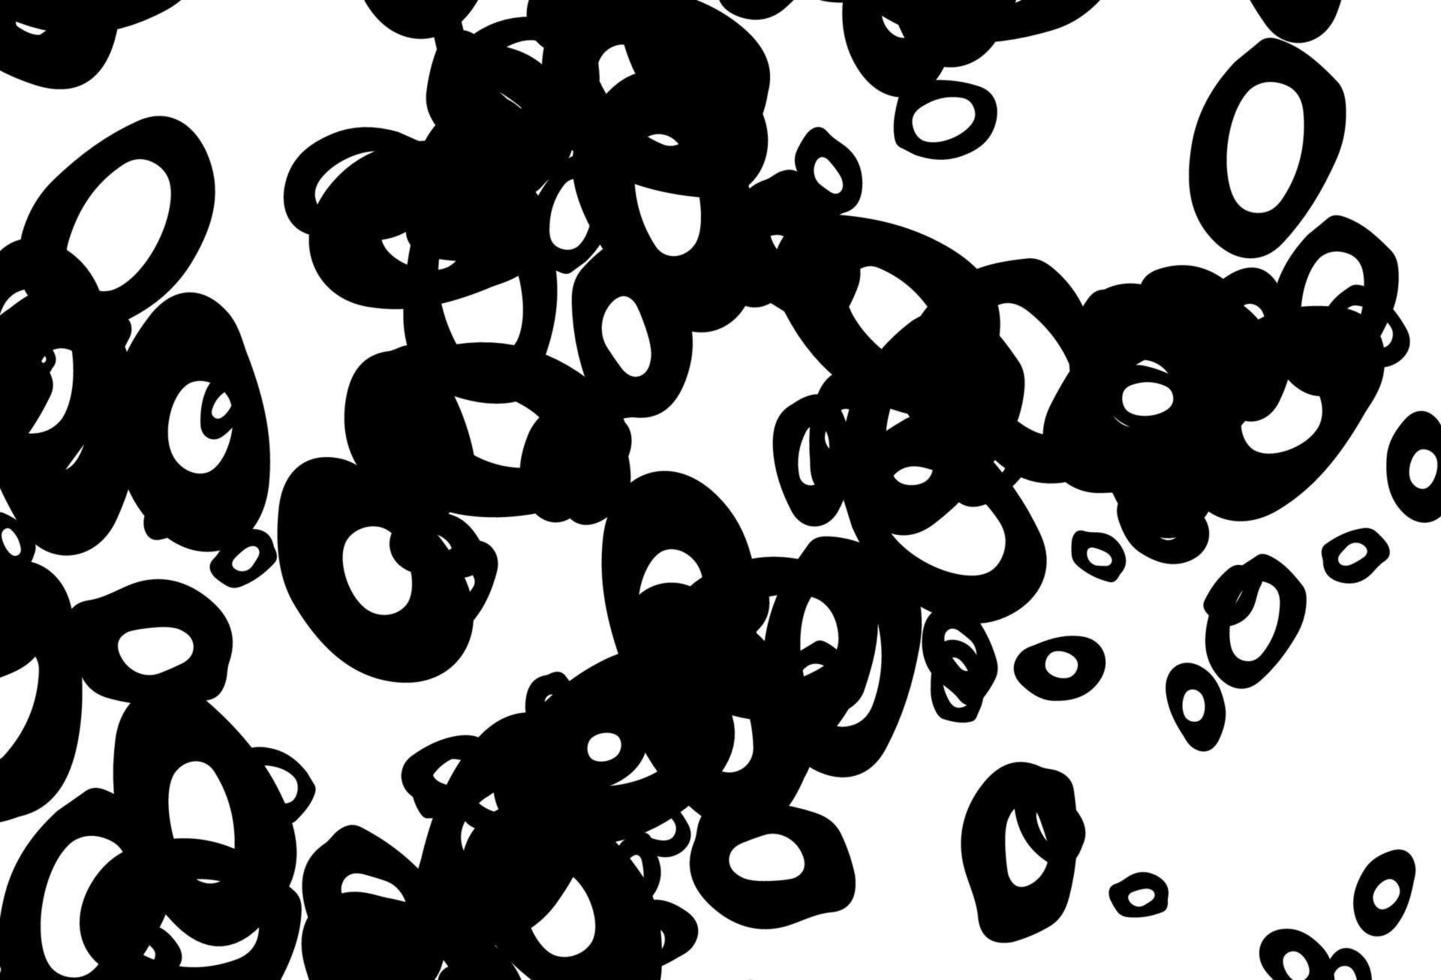 zwart-wit vector sjabloon met cirkels.